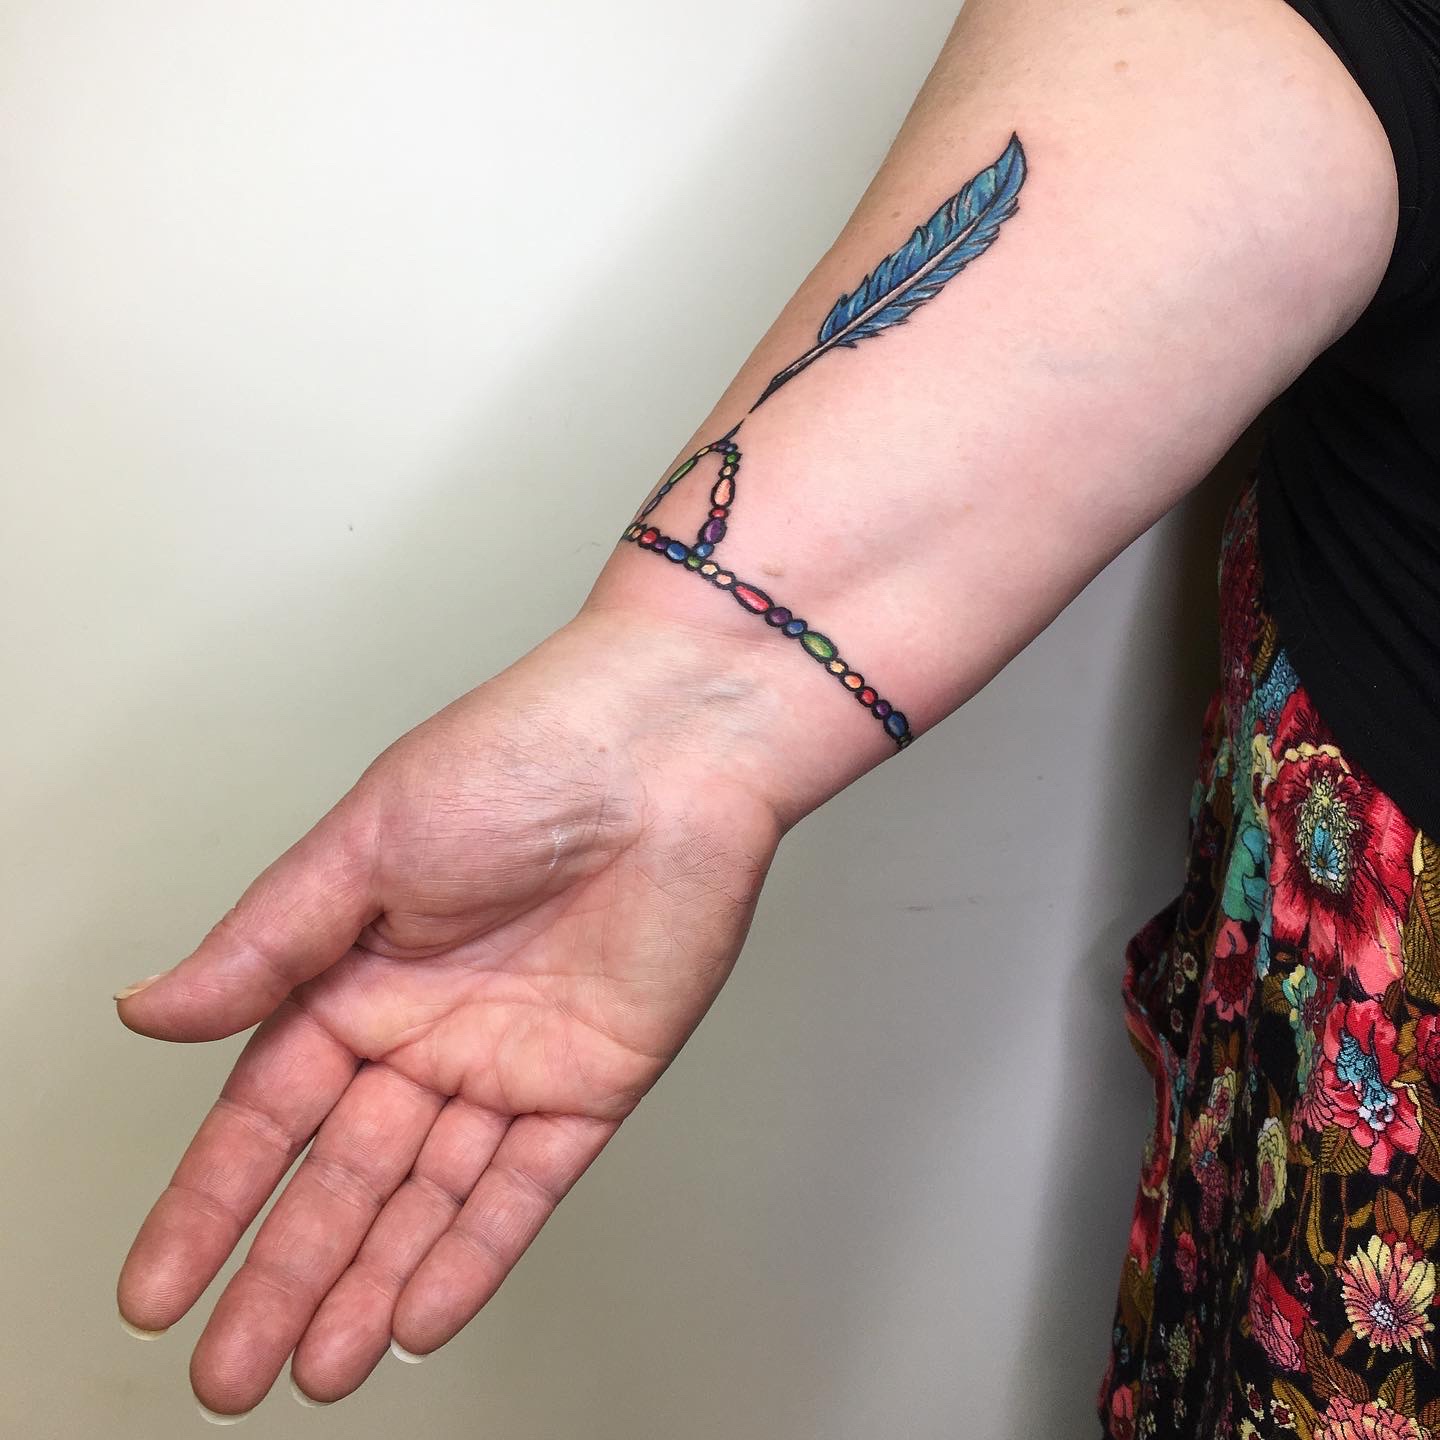 Liquid Bracelet tattoo - Liquid Bracelet tattoo tattoo Temporary Tattoos |  Momentary Ink